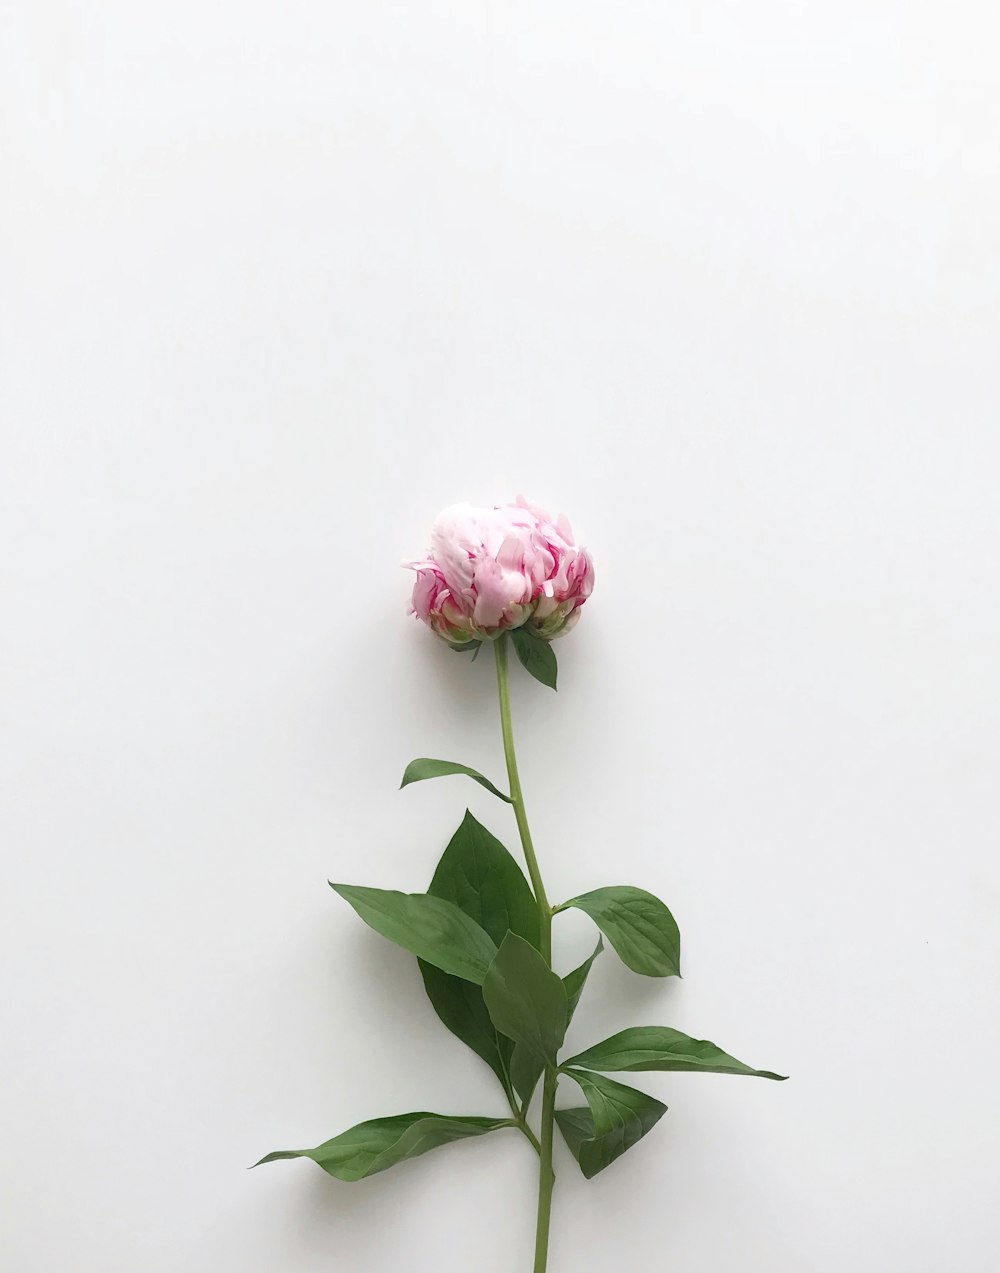 flor de pétalos rosados